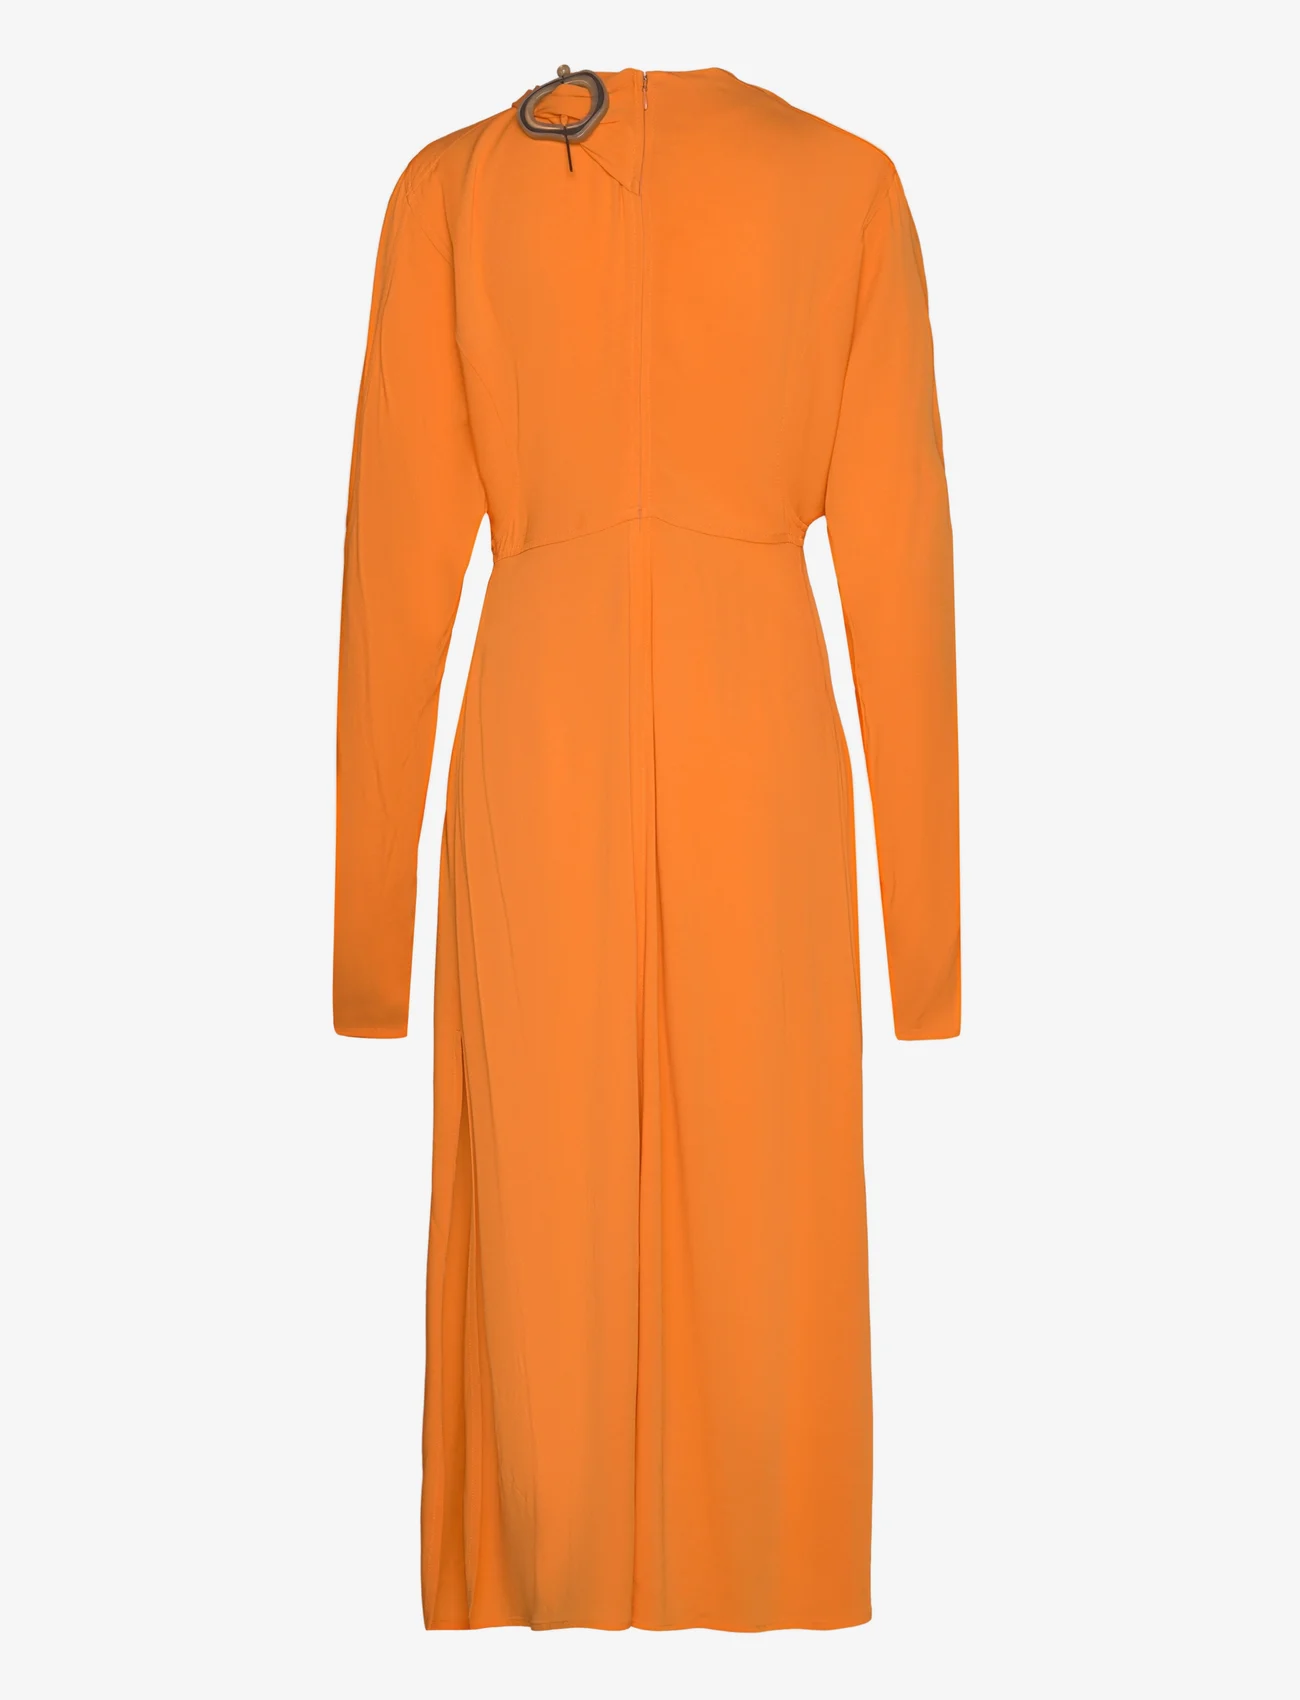 Wood Wood - Ambre crepe dress - odzież imprezowa w cenach outletowych - abricot orange - 1